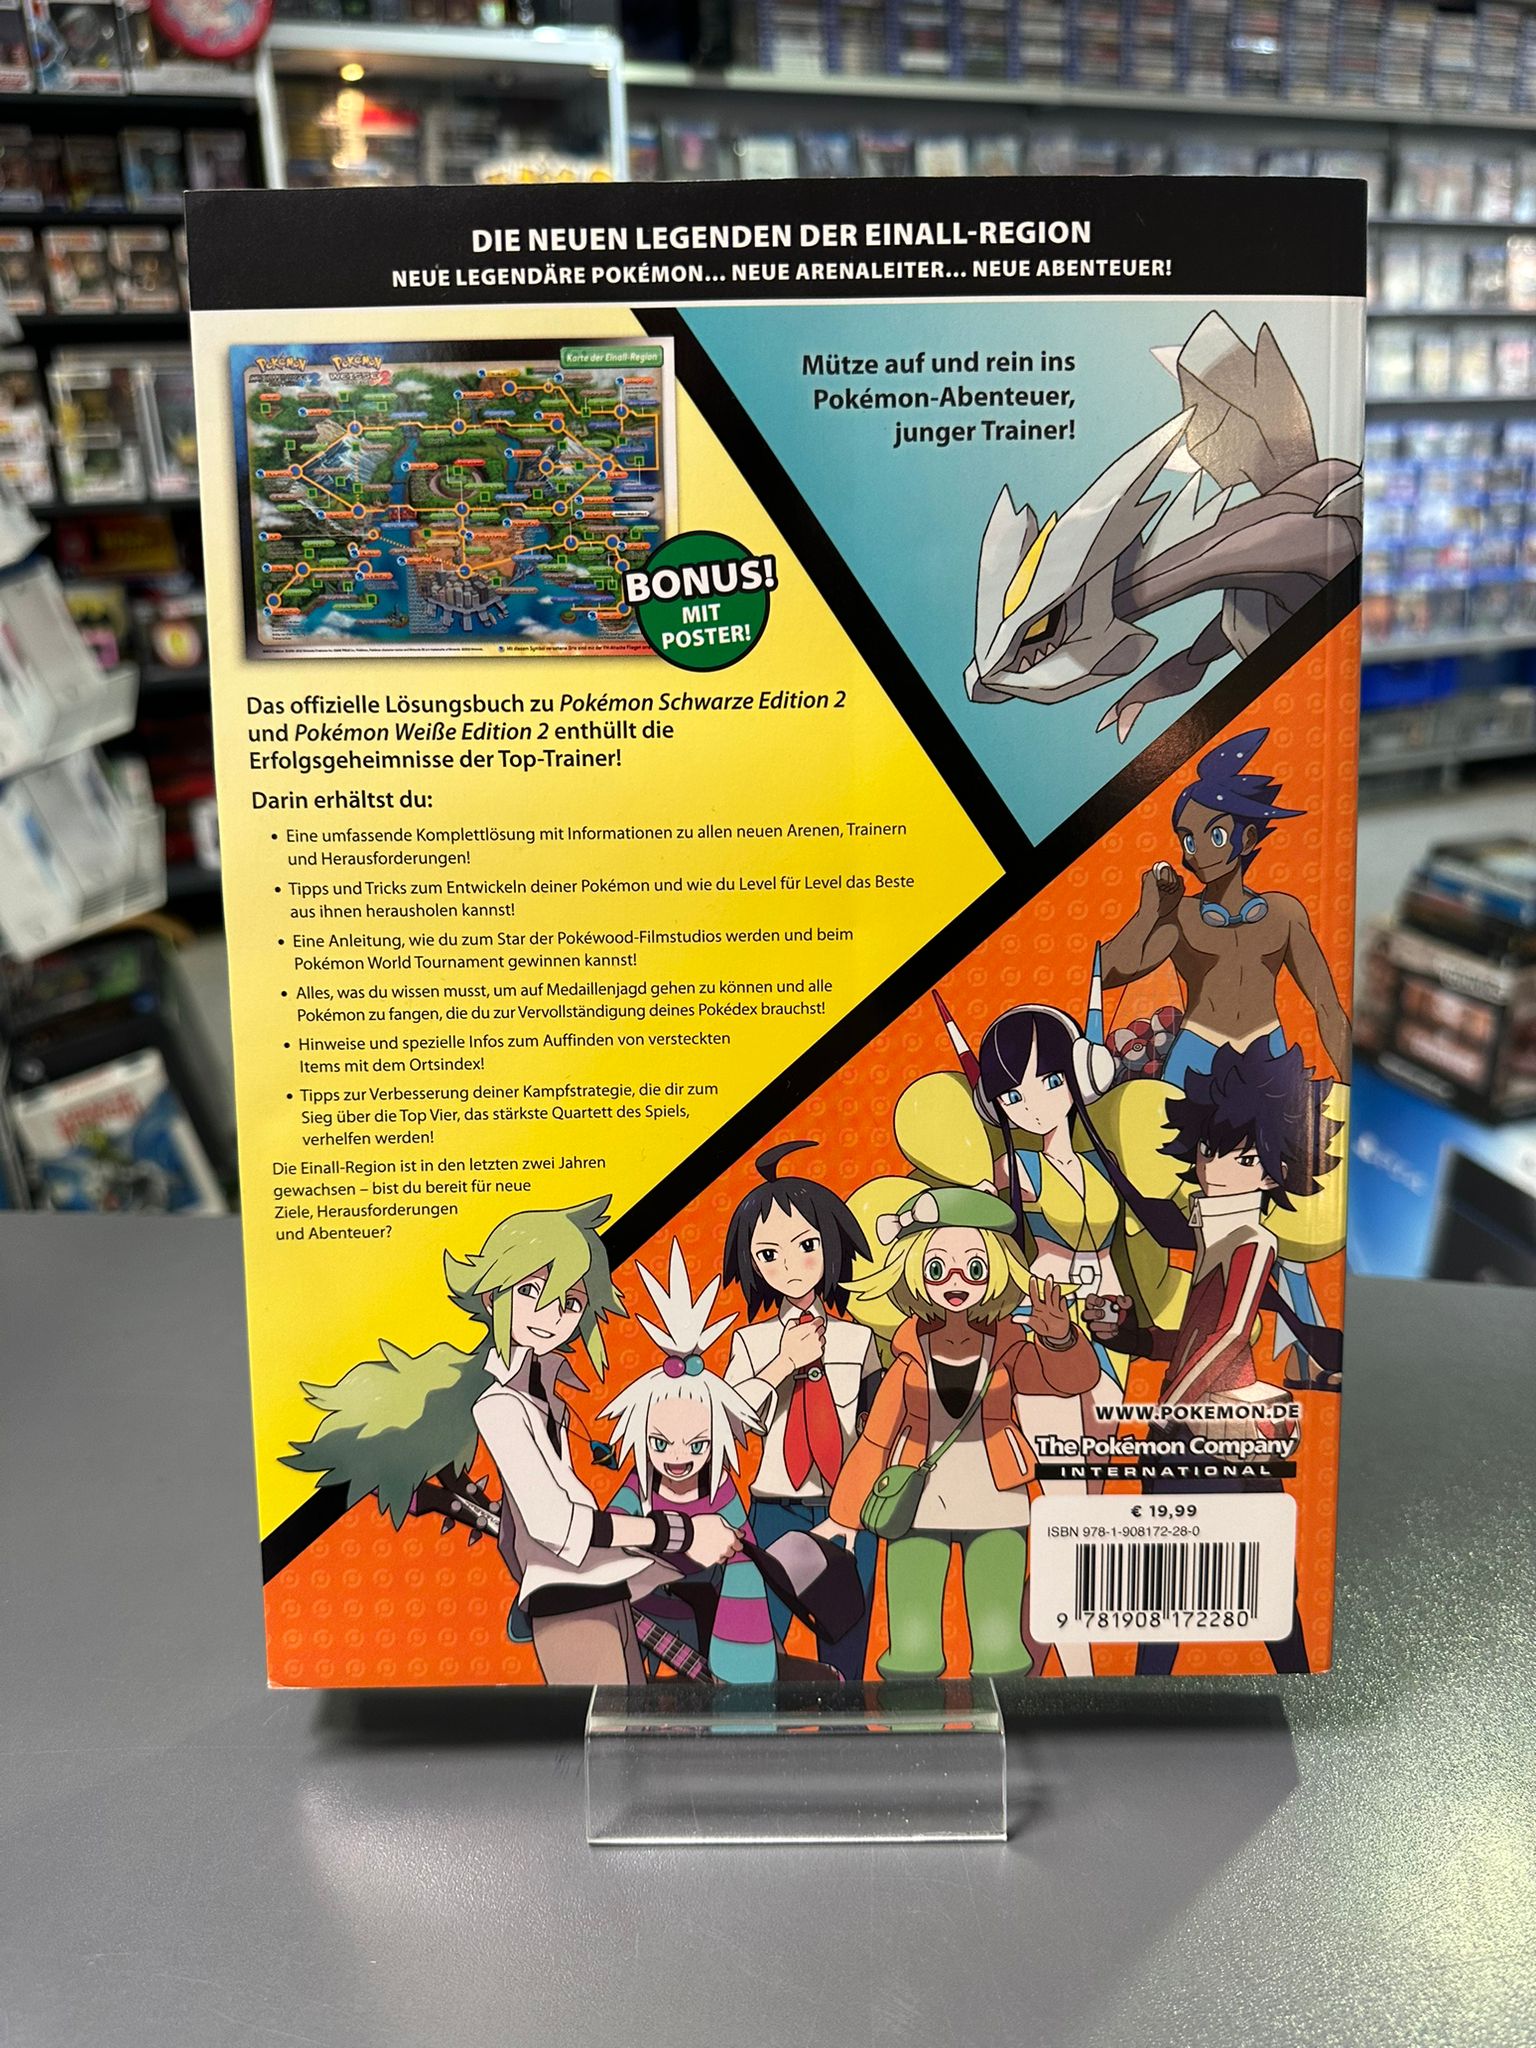 Pokémon: Schwarze Edition 2 / Pokémon: Weiße Edition 2 - Das offizielle Pokémon Lösungsbuch für die Einall-Region